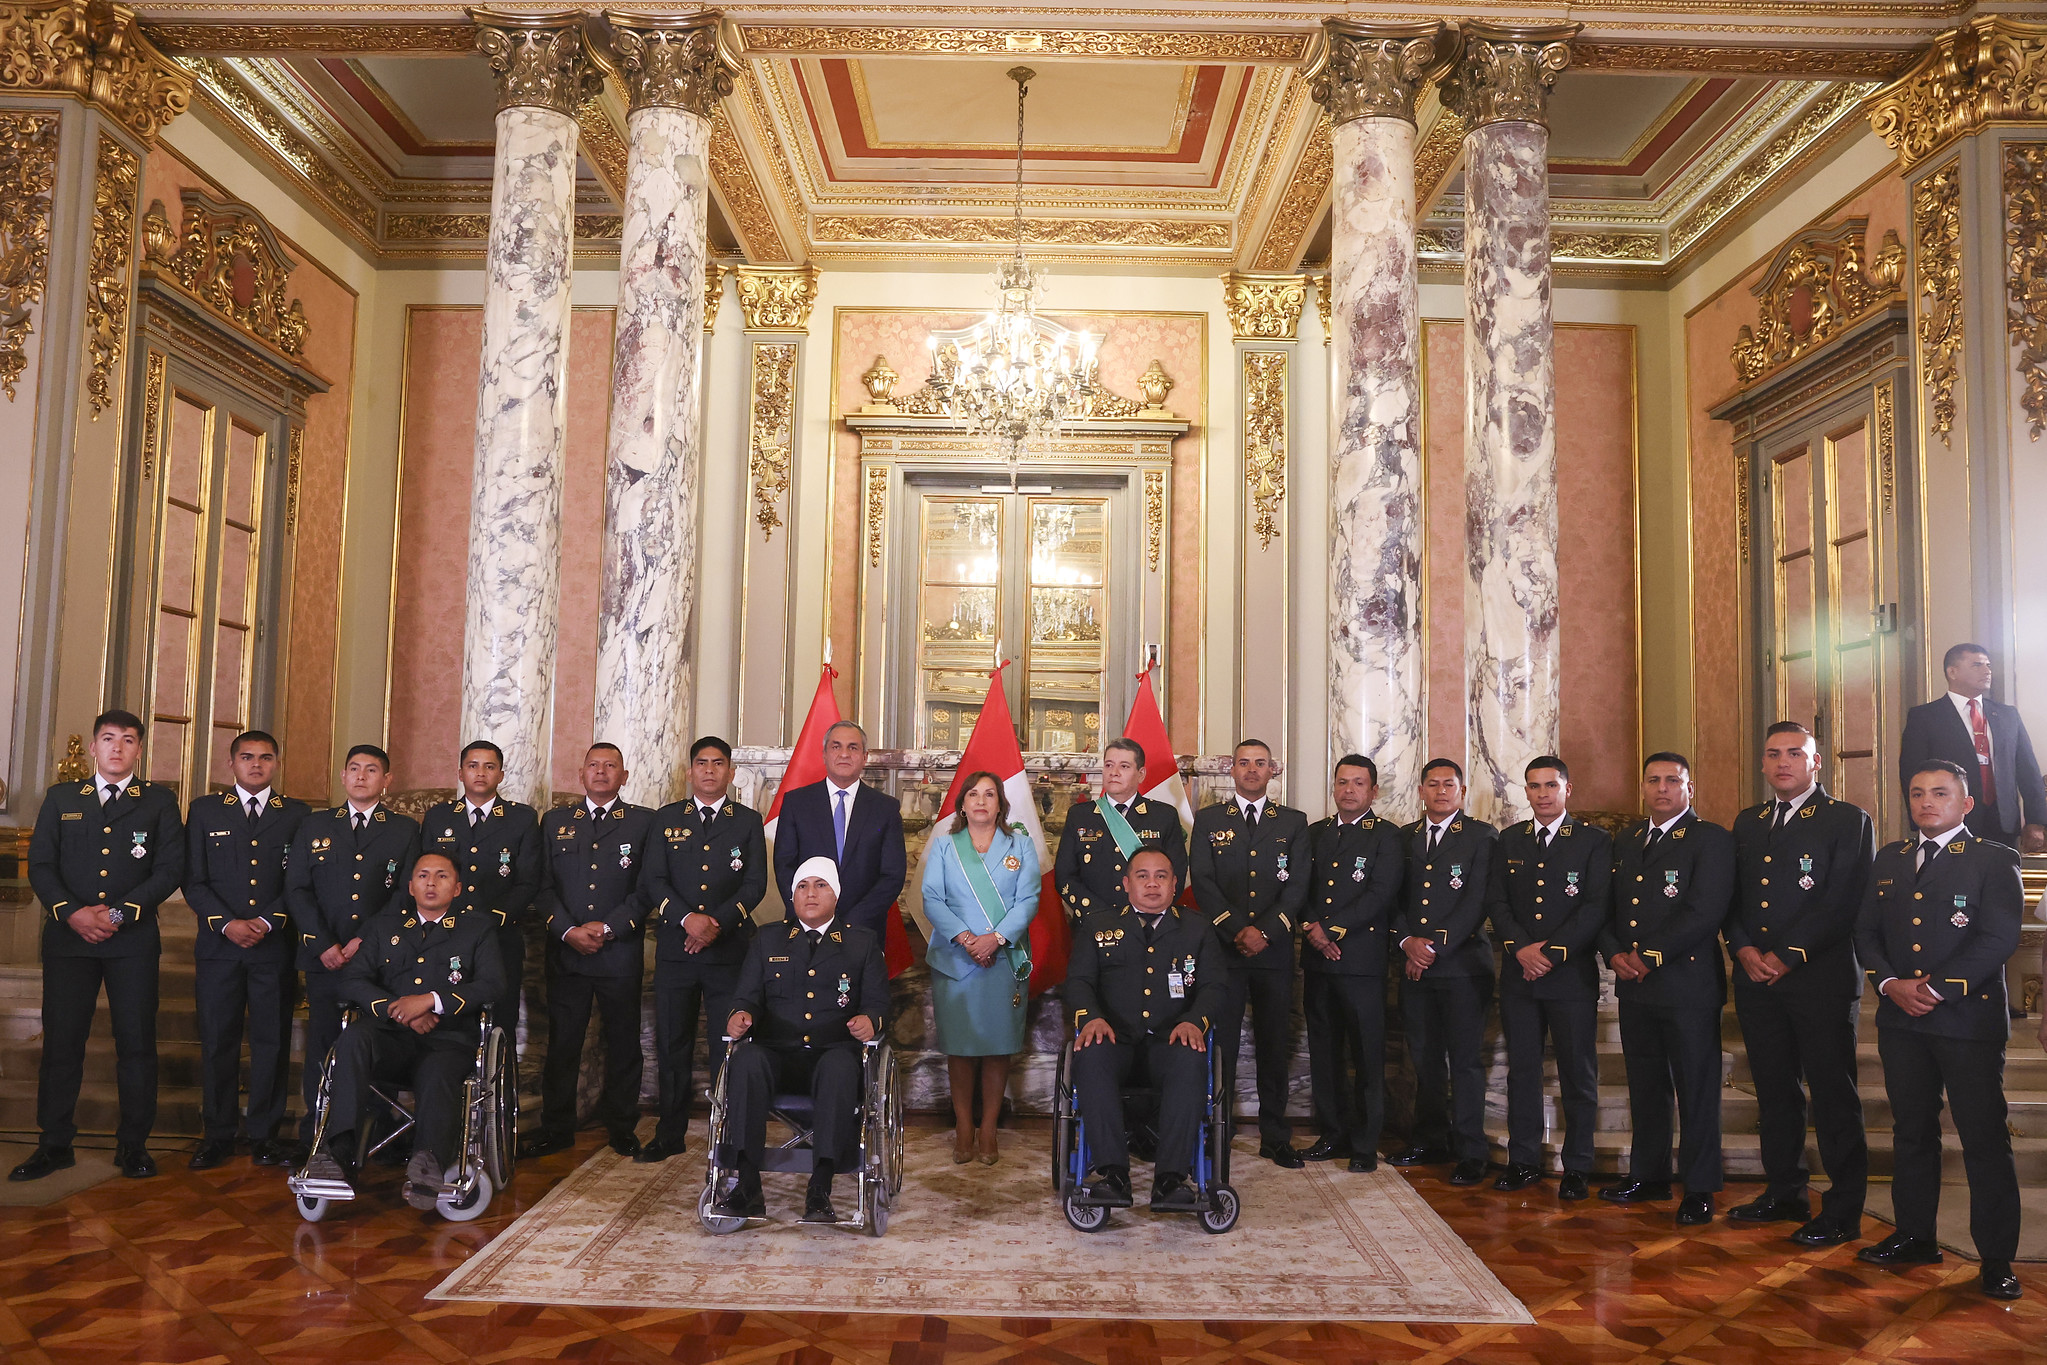 PERÚ: Presidenta condecora con la Orden al Mérito de la Policía Nacional a valerosos efectivos por sus destacadas labores en favor de la seguridad